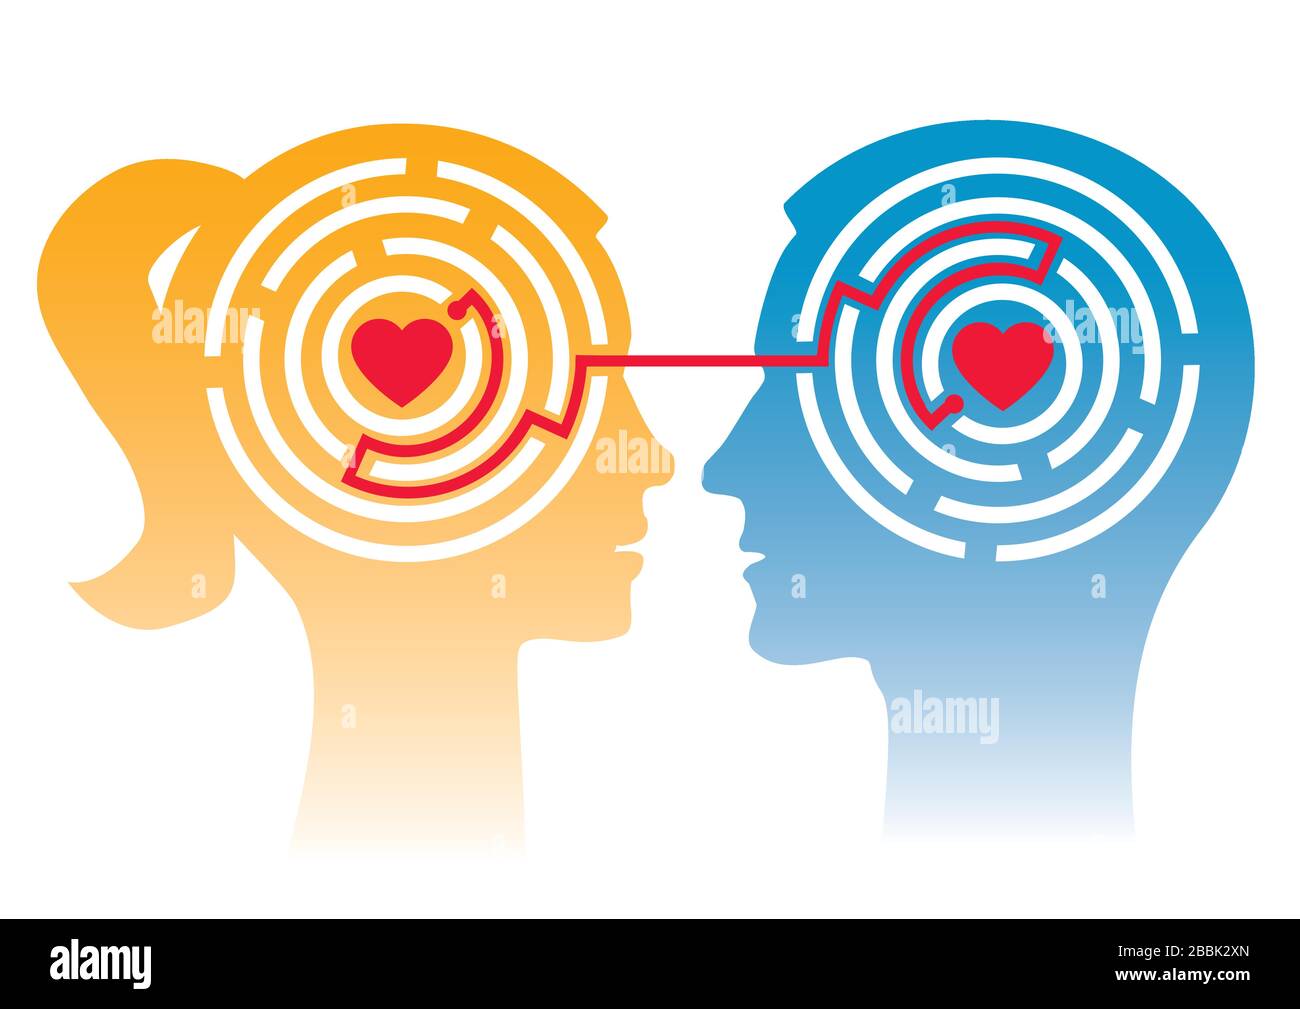 Liebendes Paar, Labyrinth der Liebe. Stilisierter Kopf von Mann und Frau im Profil mit Labyrinth und Herzen. Konzept für die Psychologie der Liebe. Vektor verfügbar. Stock Vektor